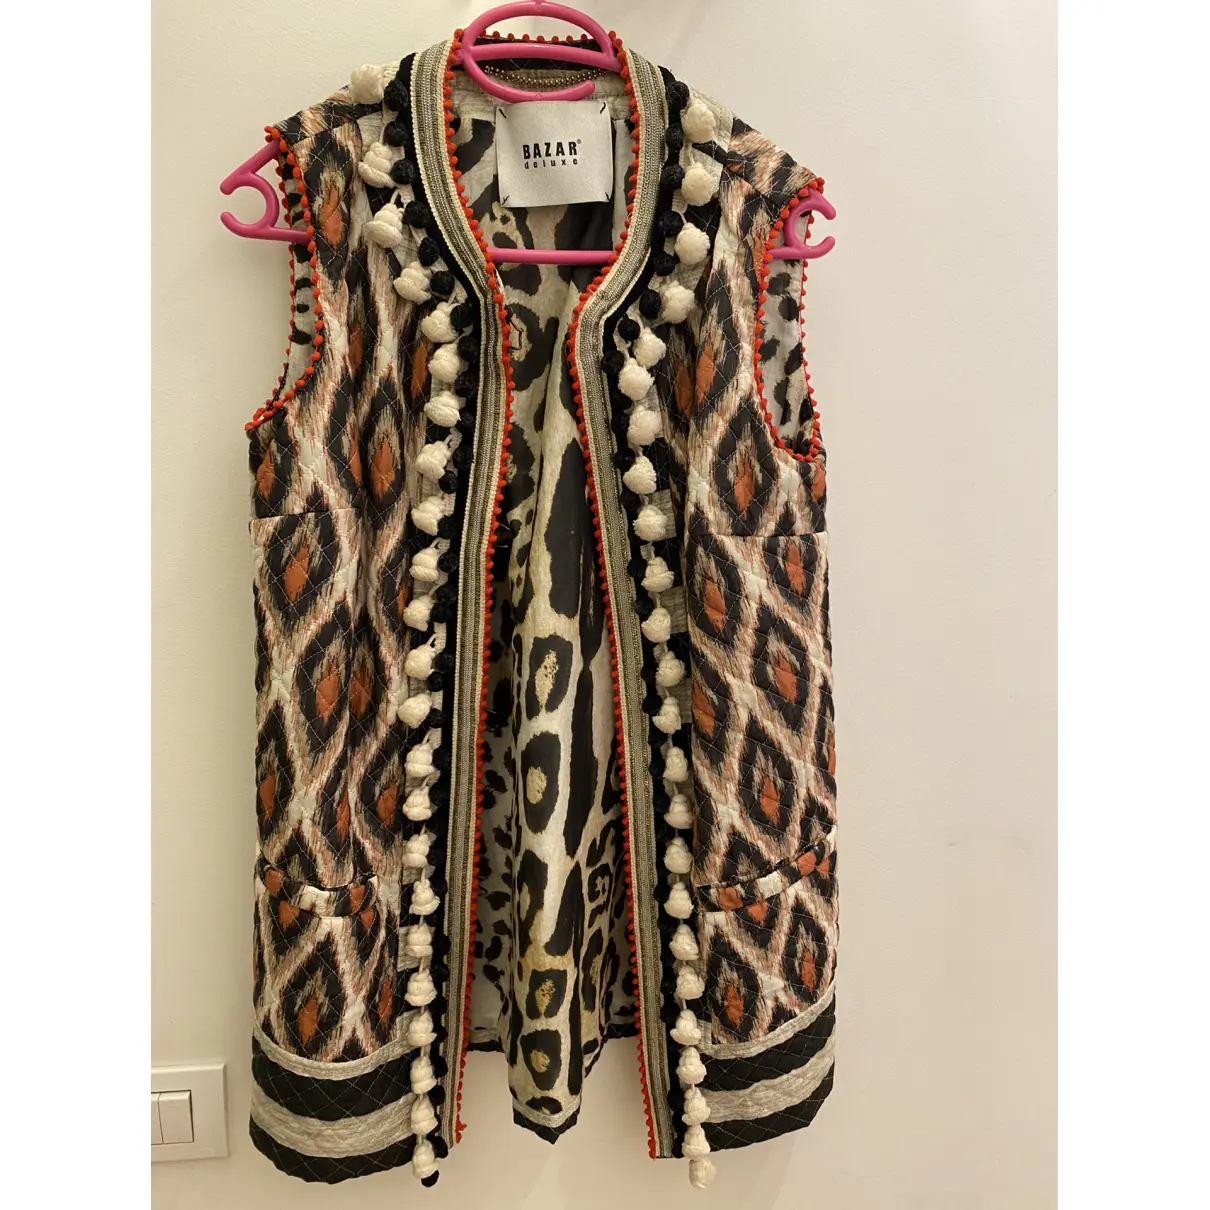 Buy Bazar Deluxe Cardi coat online